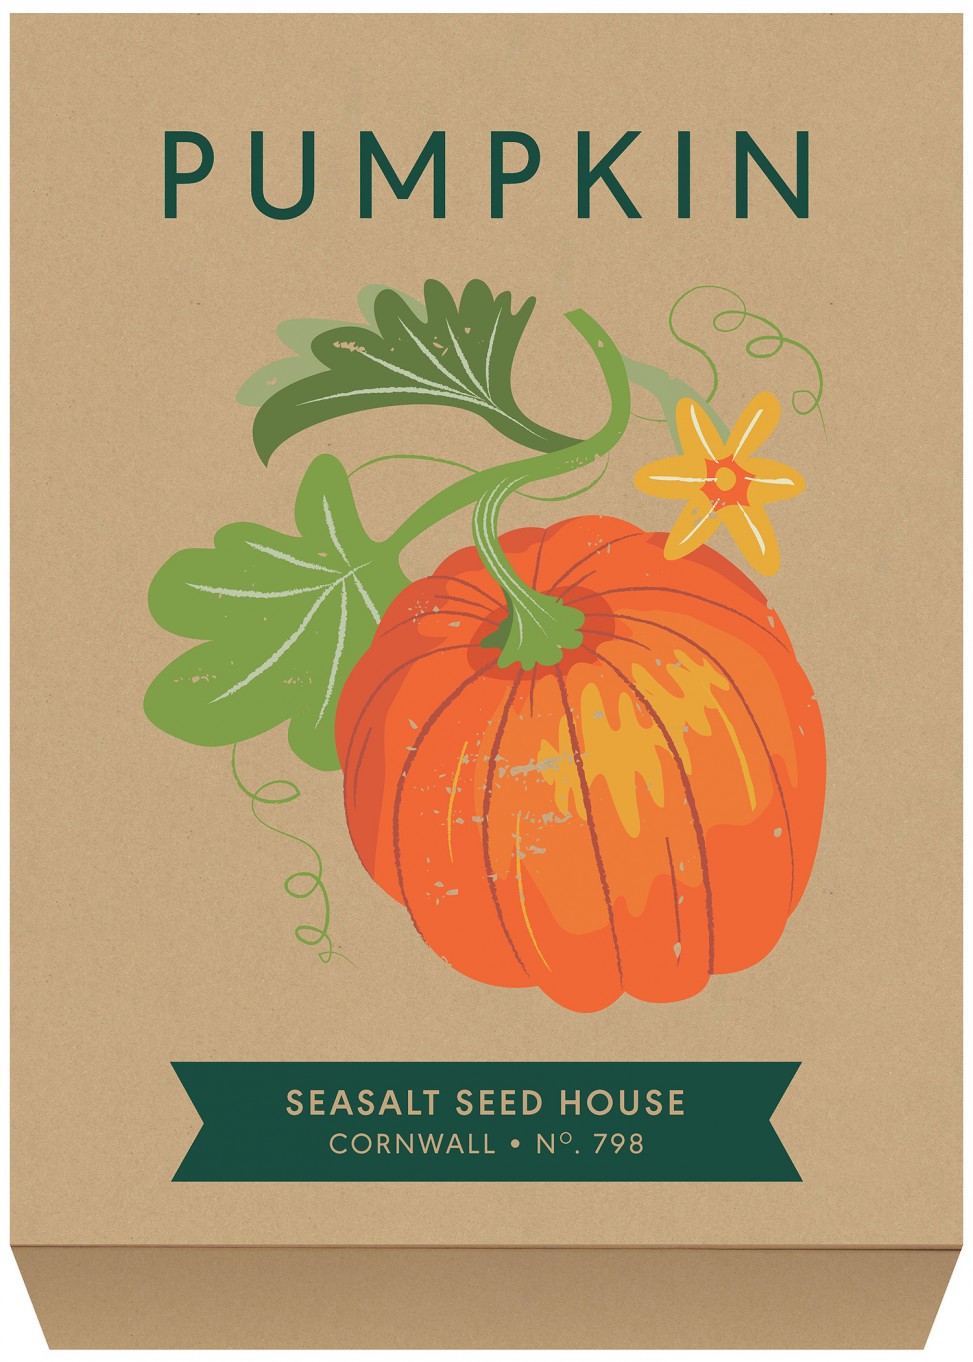 Pumpkin seed packet illustration by Matt Johnson